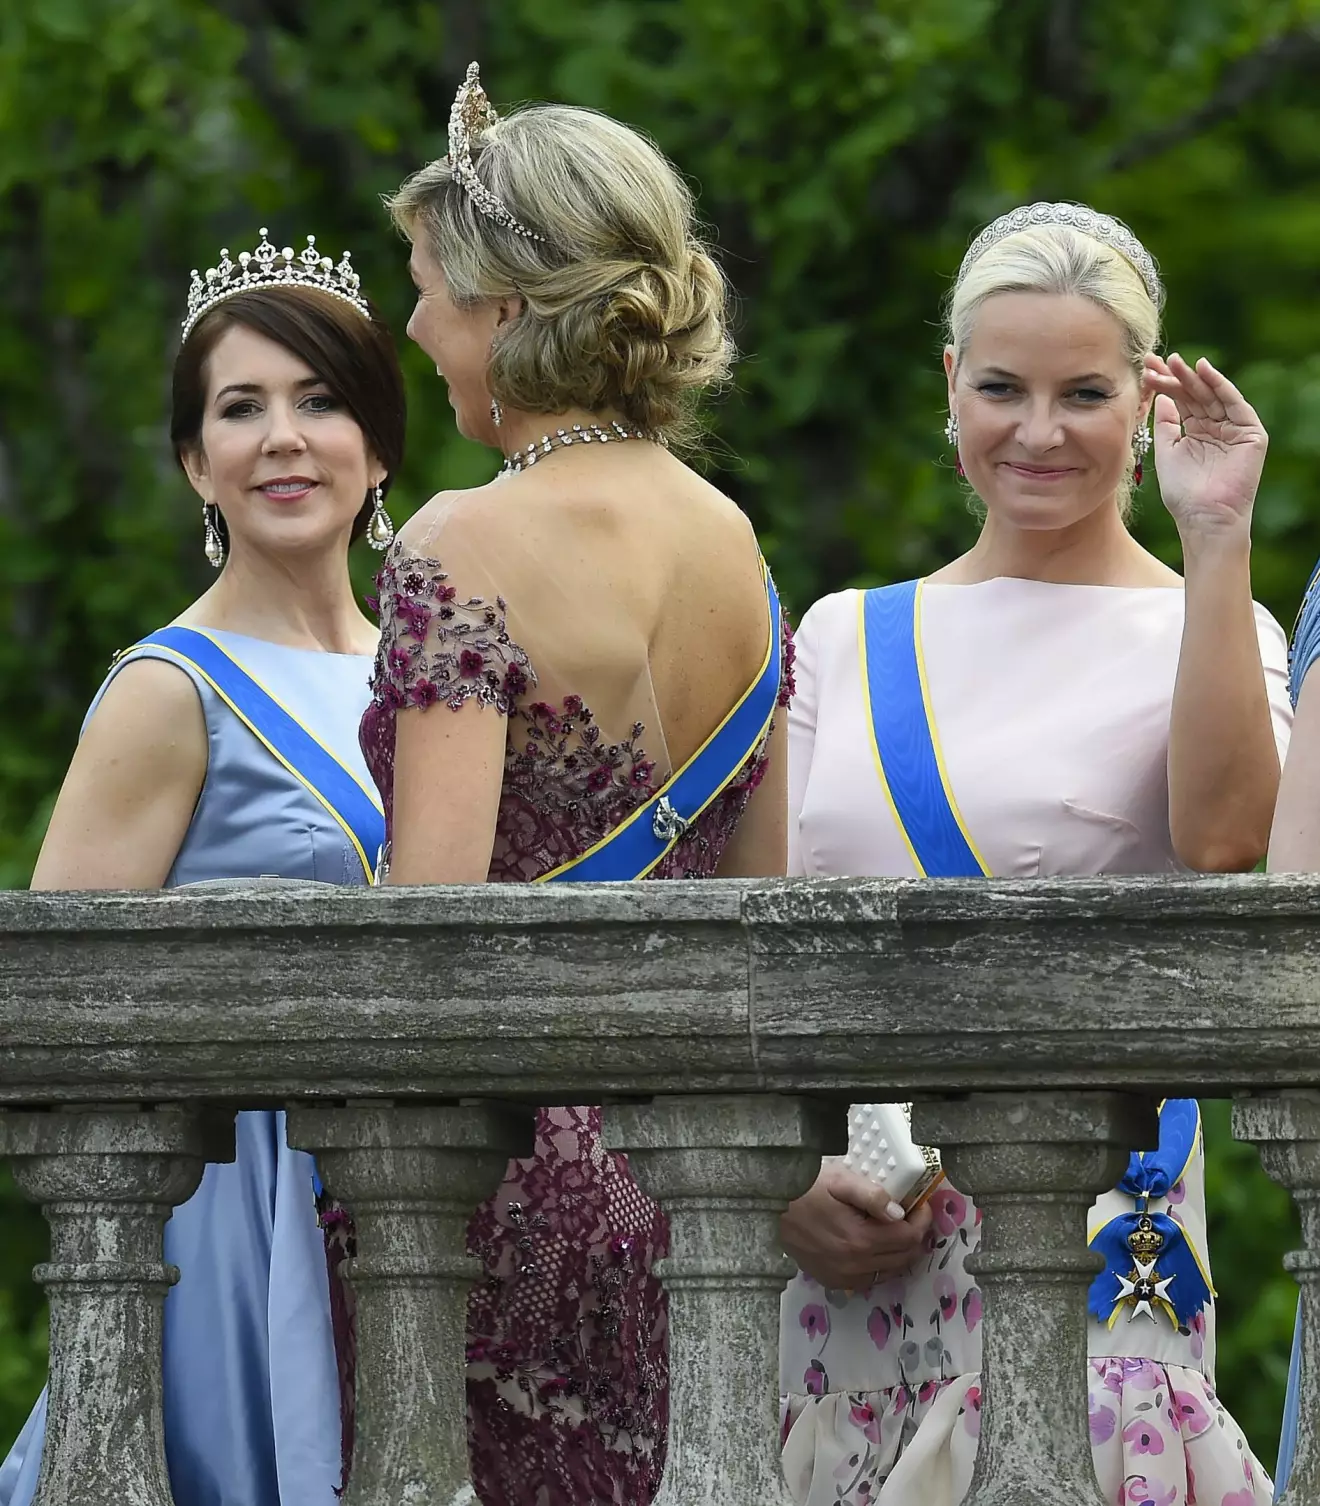 Drottning Mary och kronprinsessan Mette-Marit på prinsessan Sofias och prins Carl Philips bröllop 2015